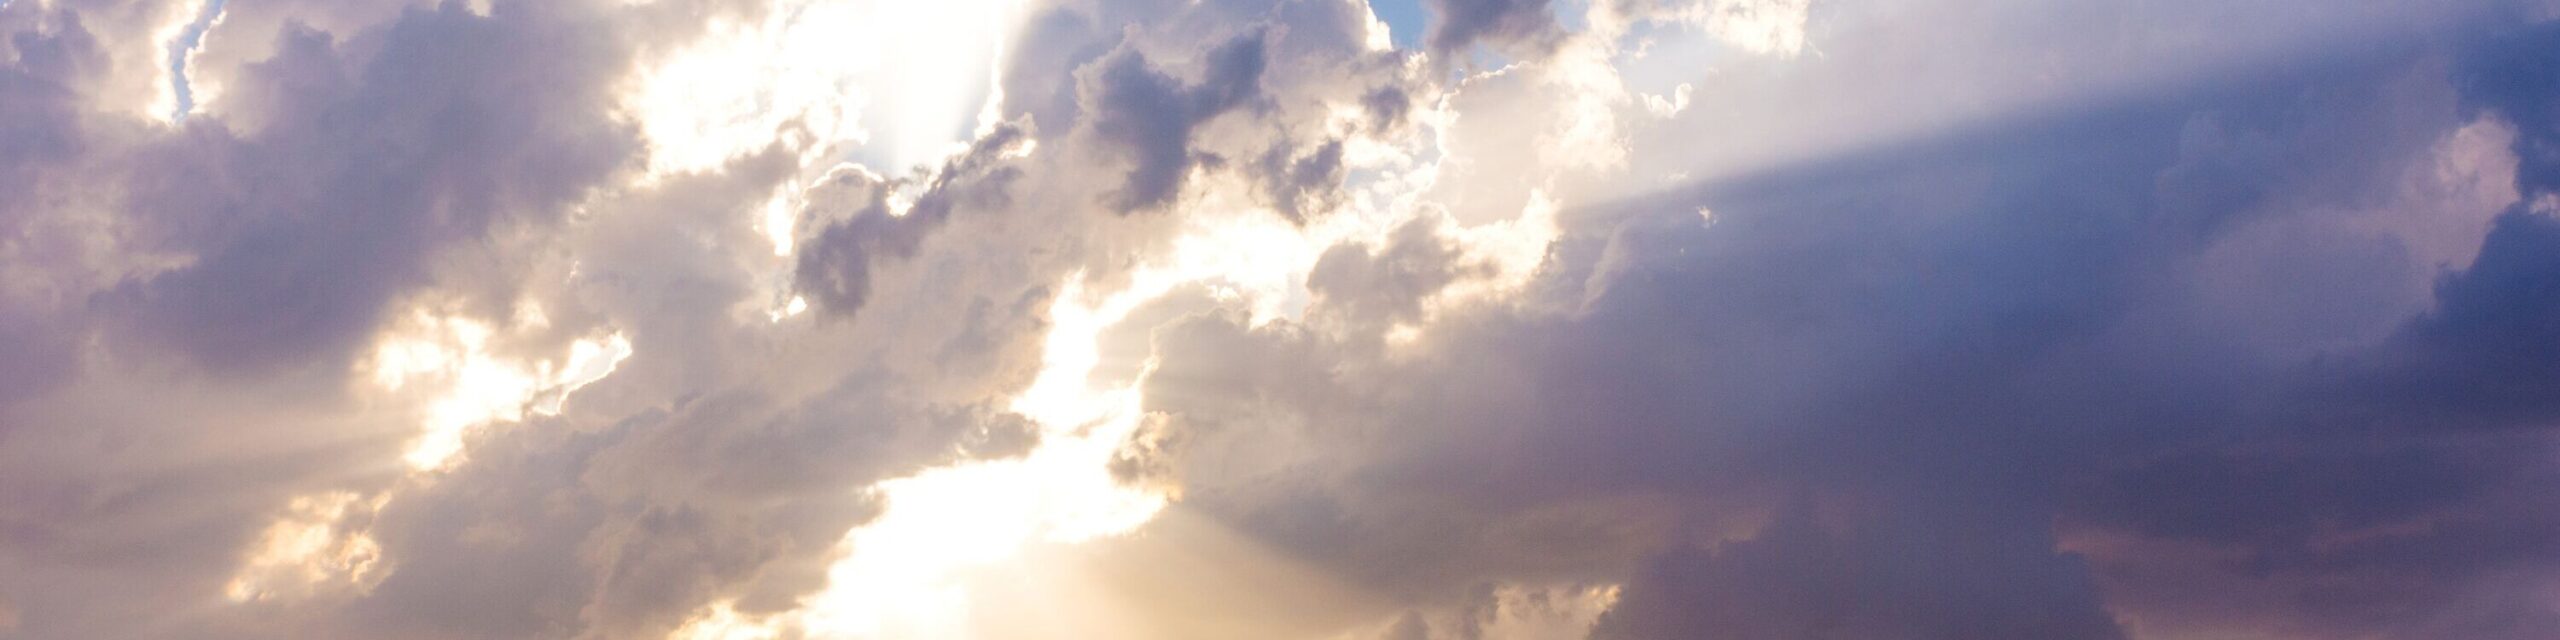 Sonnenstrahlen durchbrechen Wolkendecke